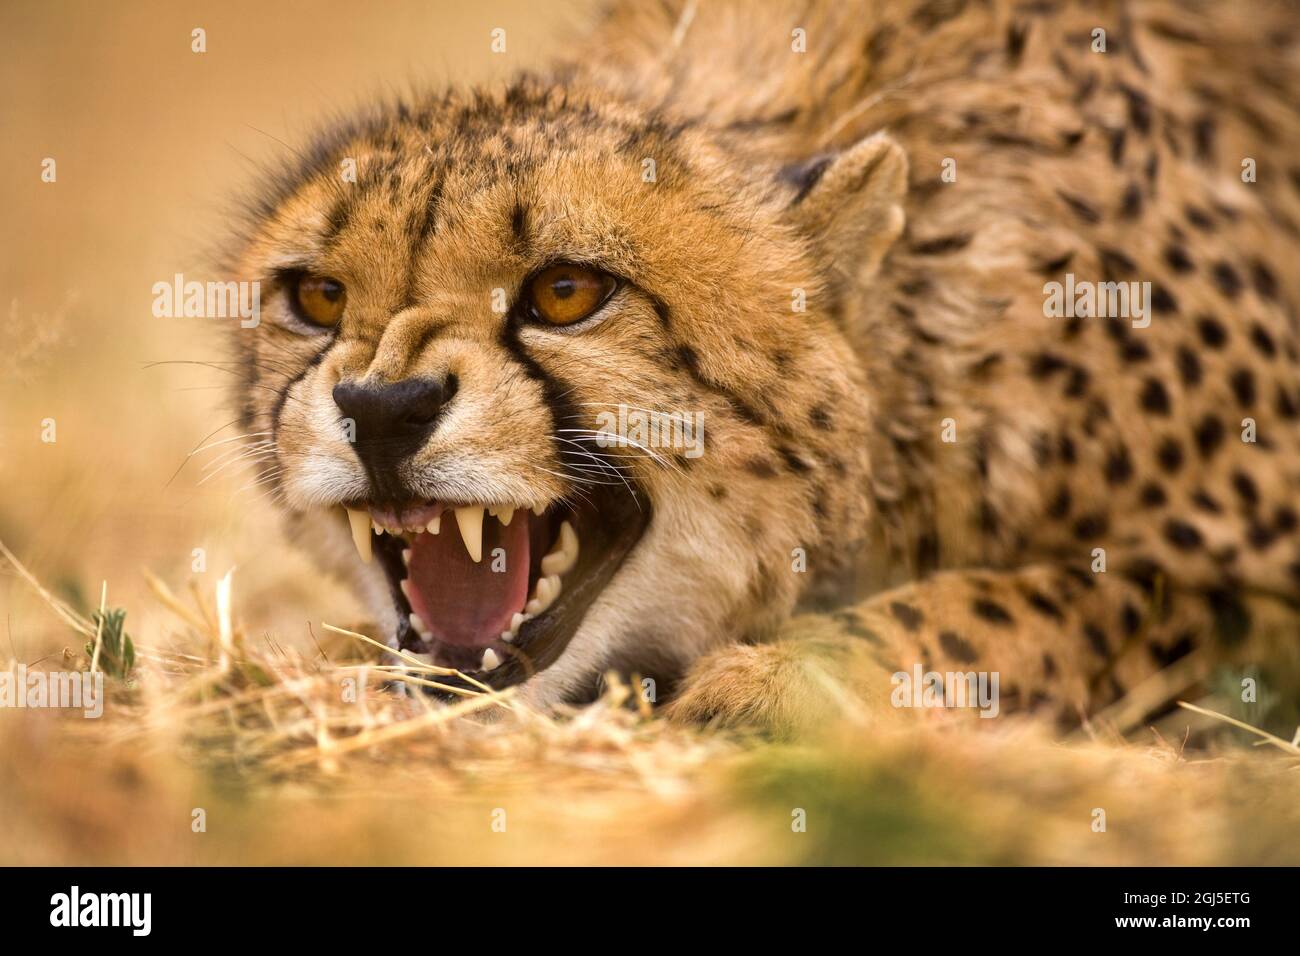 Kenya, Masai Mara National Reserve. Close-up of snarling young cheetah. Stock Photo